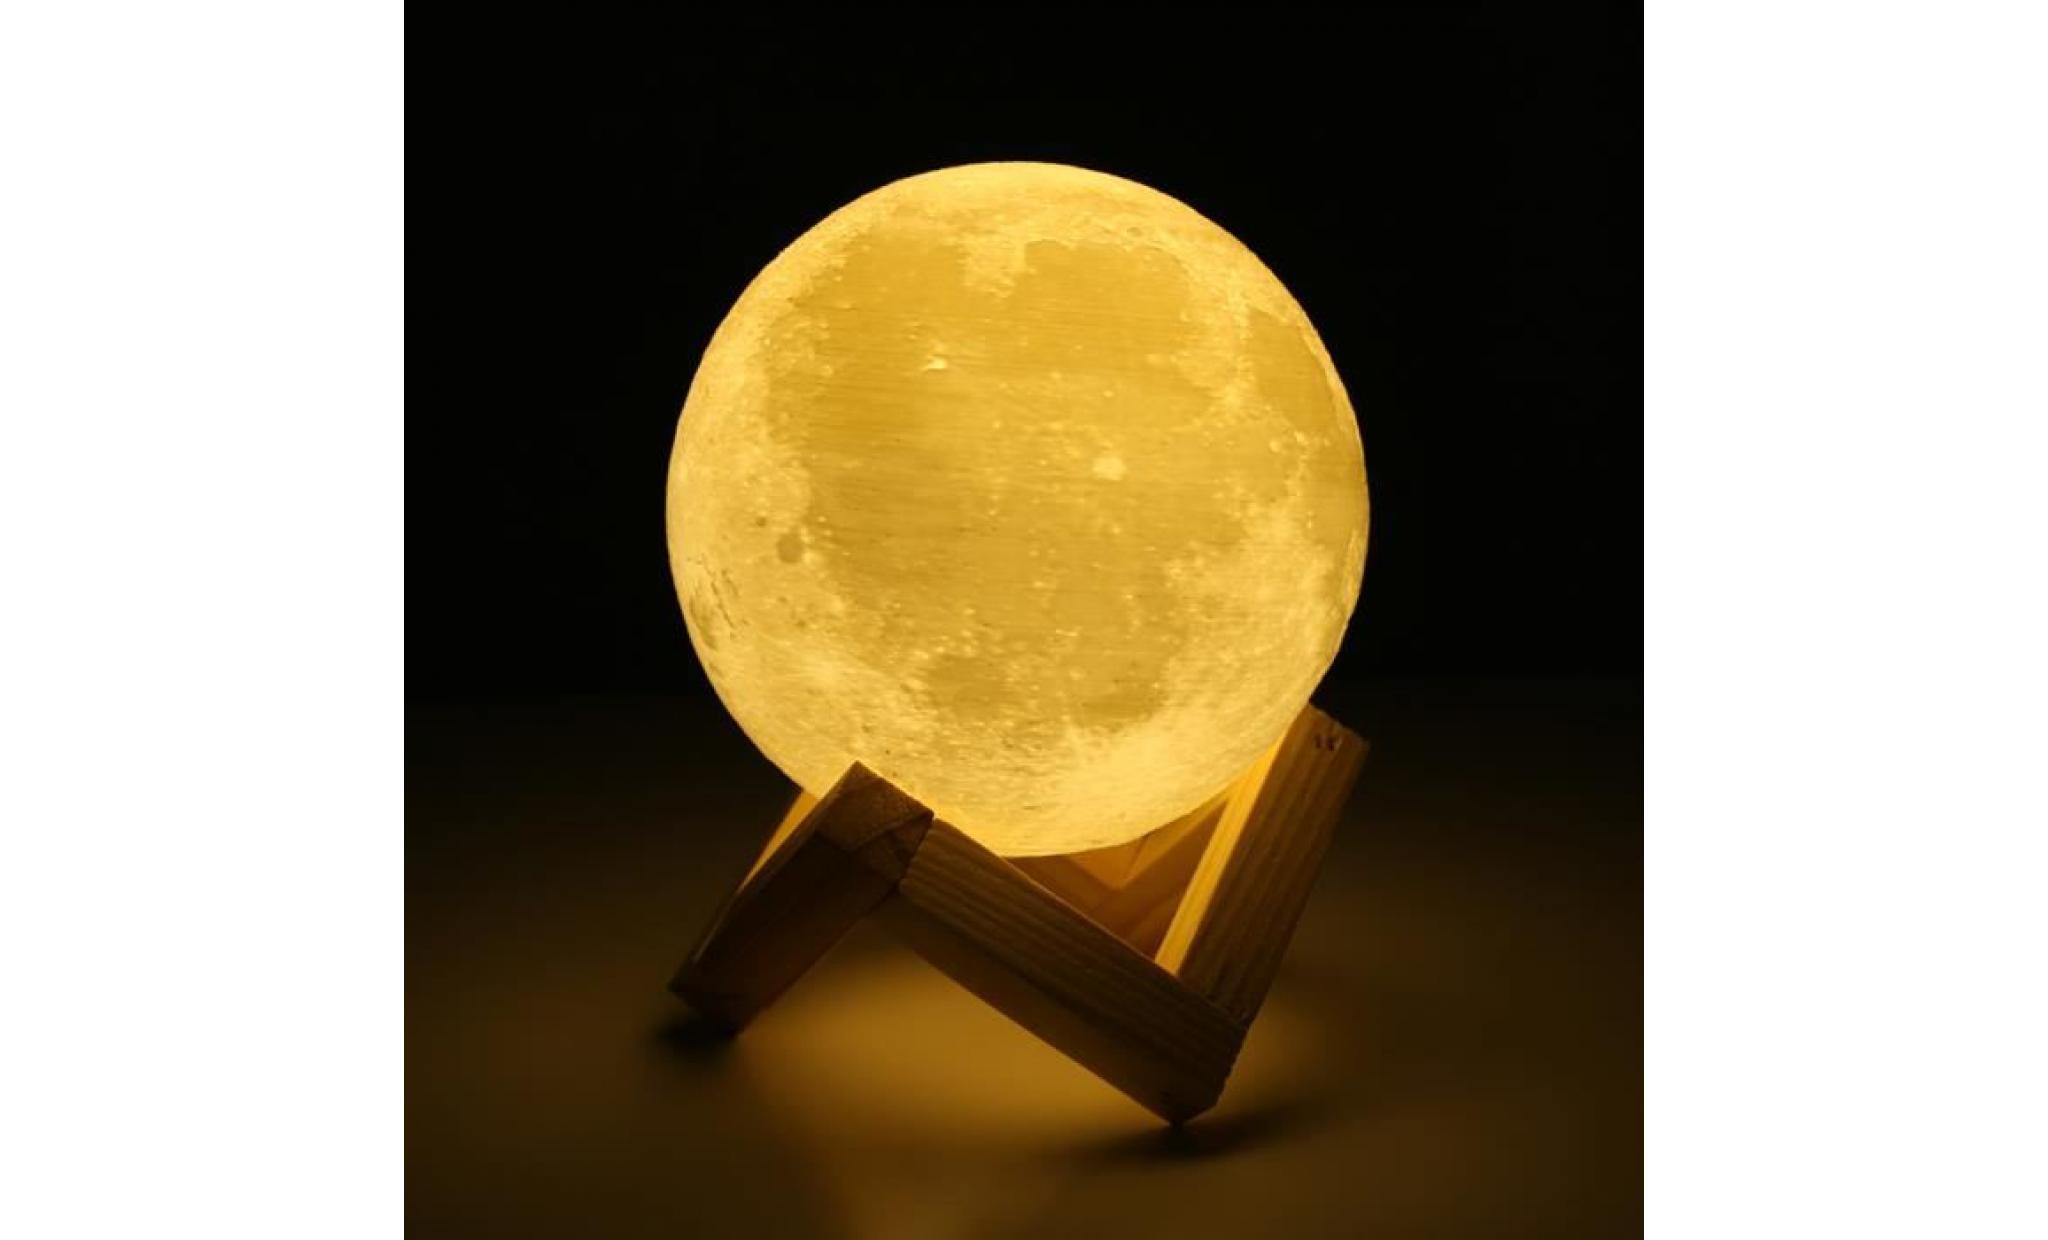 lampe de lune 10cm   lune imprimée en 3d   meilleur cadeau pour les enfants, amis, amants   avec usb et support en bois pas cher